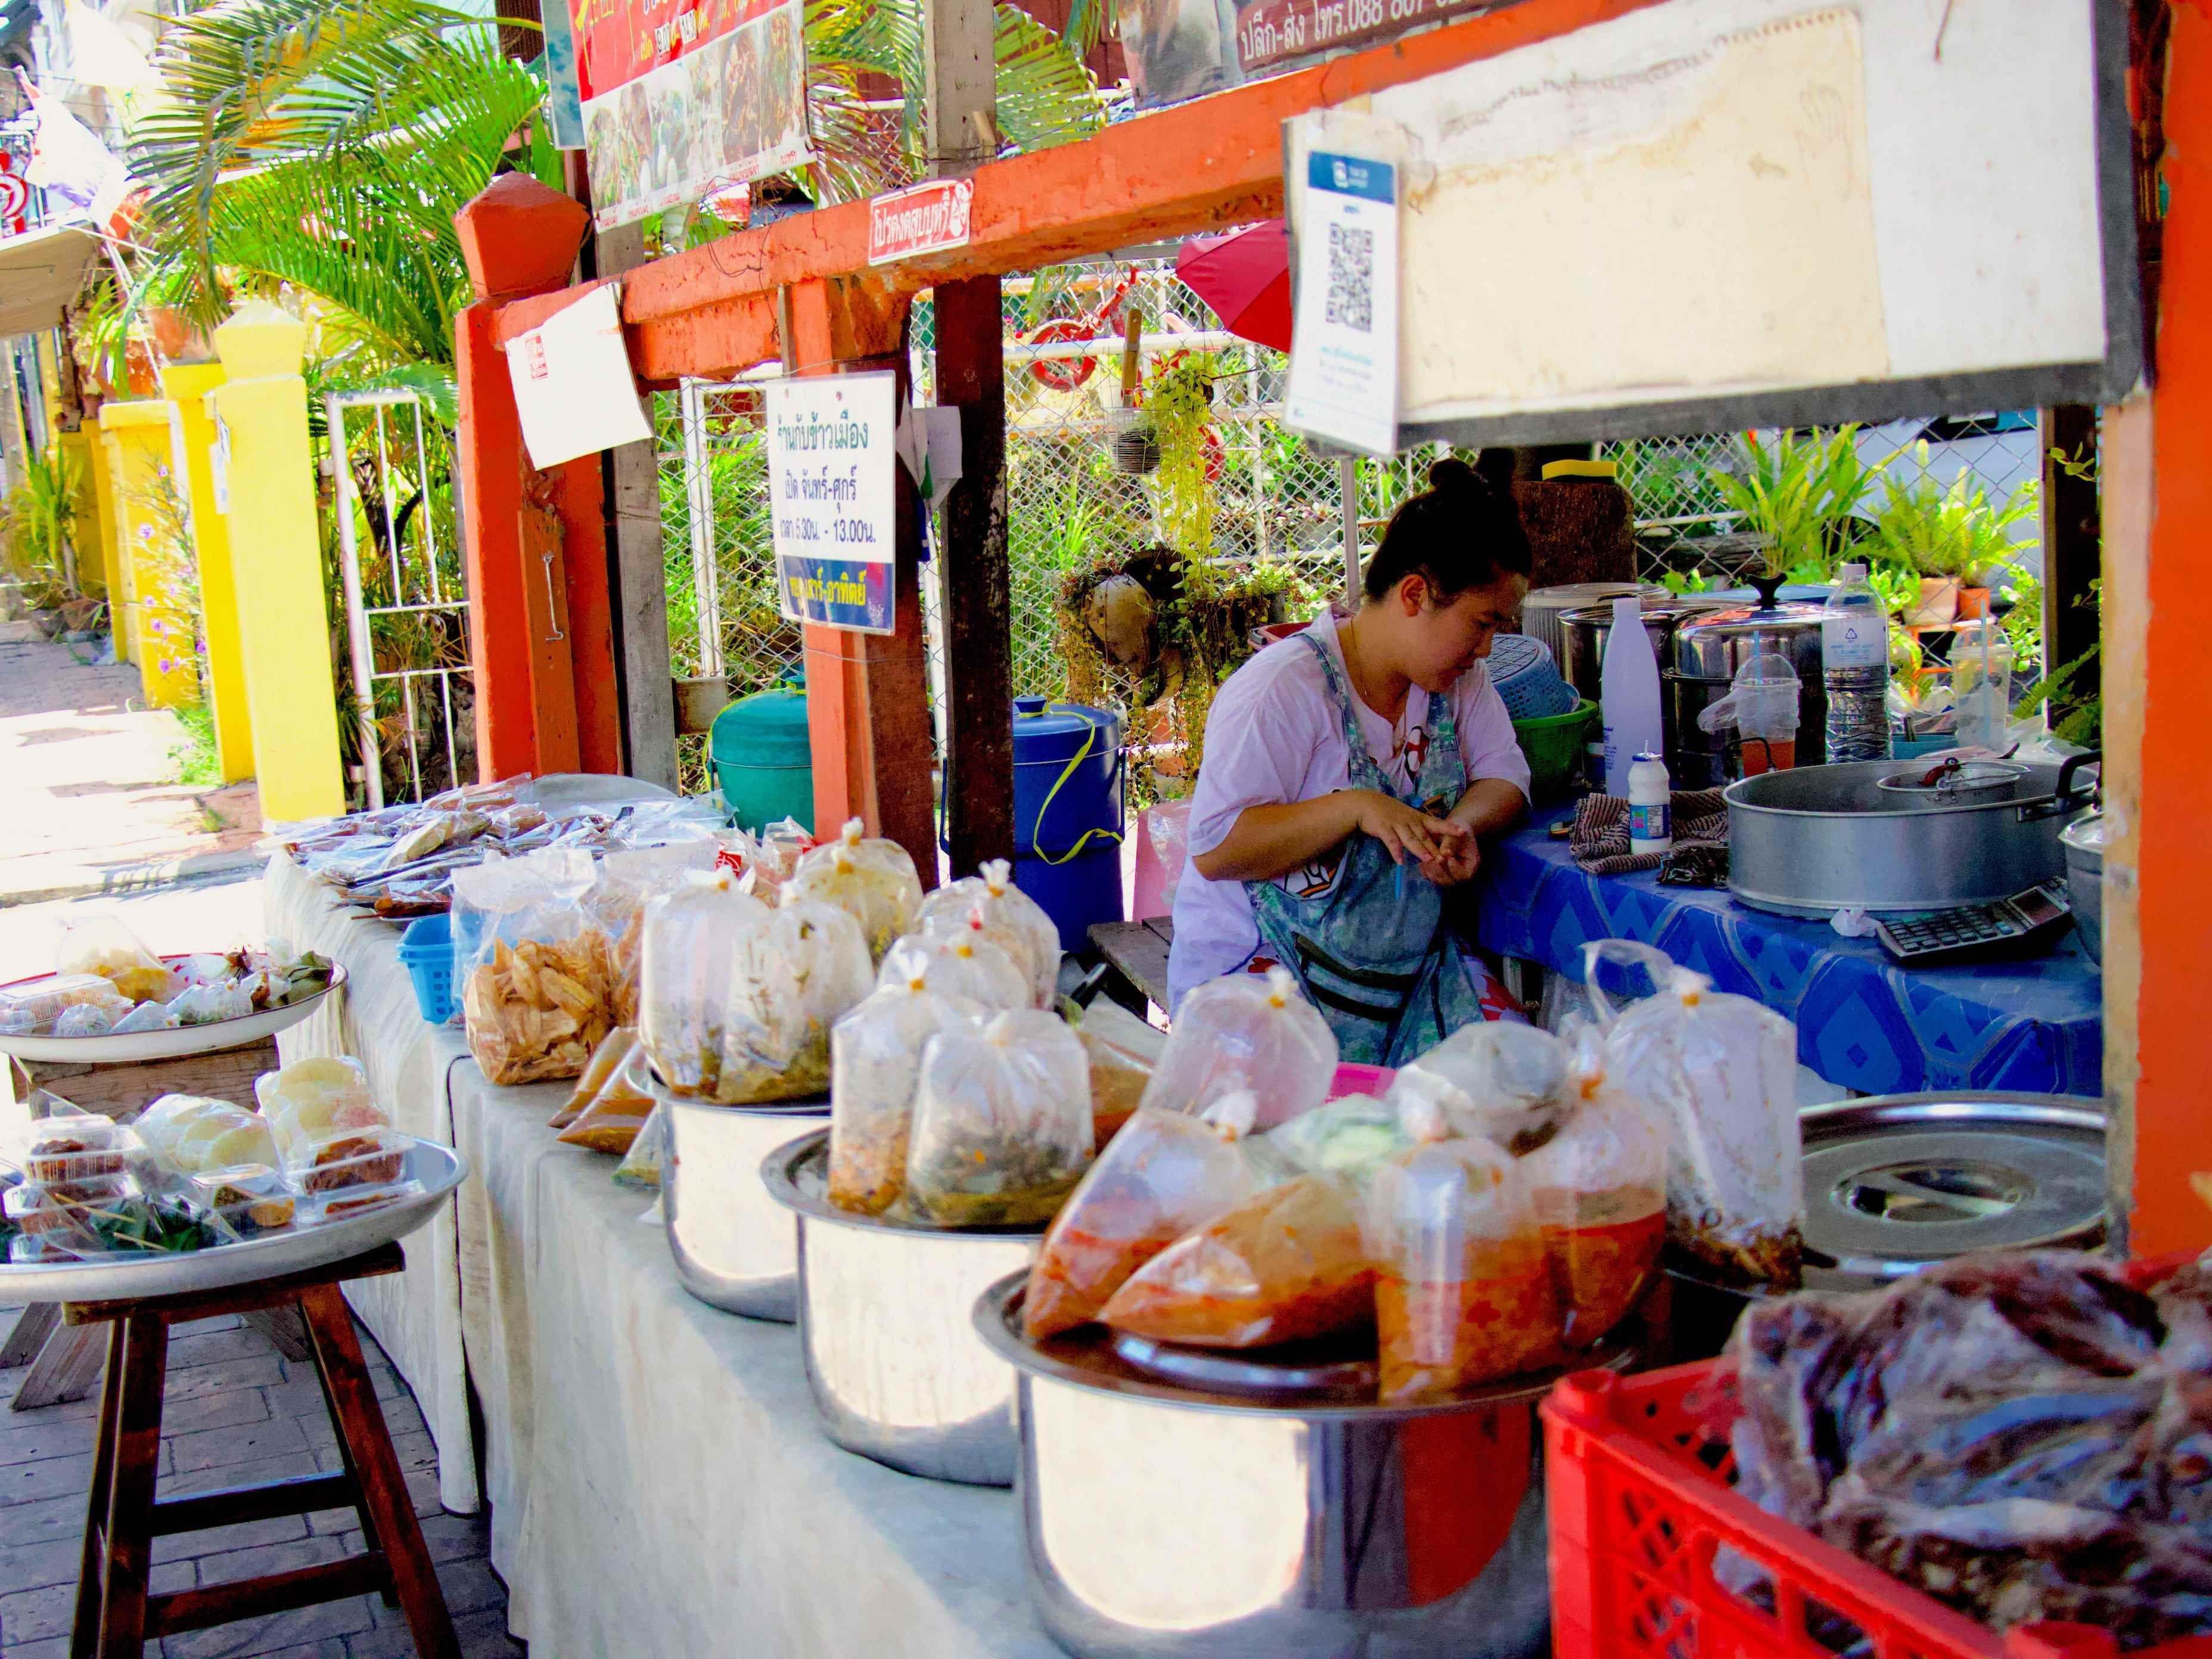 Ein Stand am Straßenrand, an dem lokale Gerichte aus Nordthailand verkauft werden.